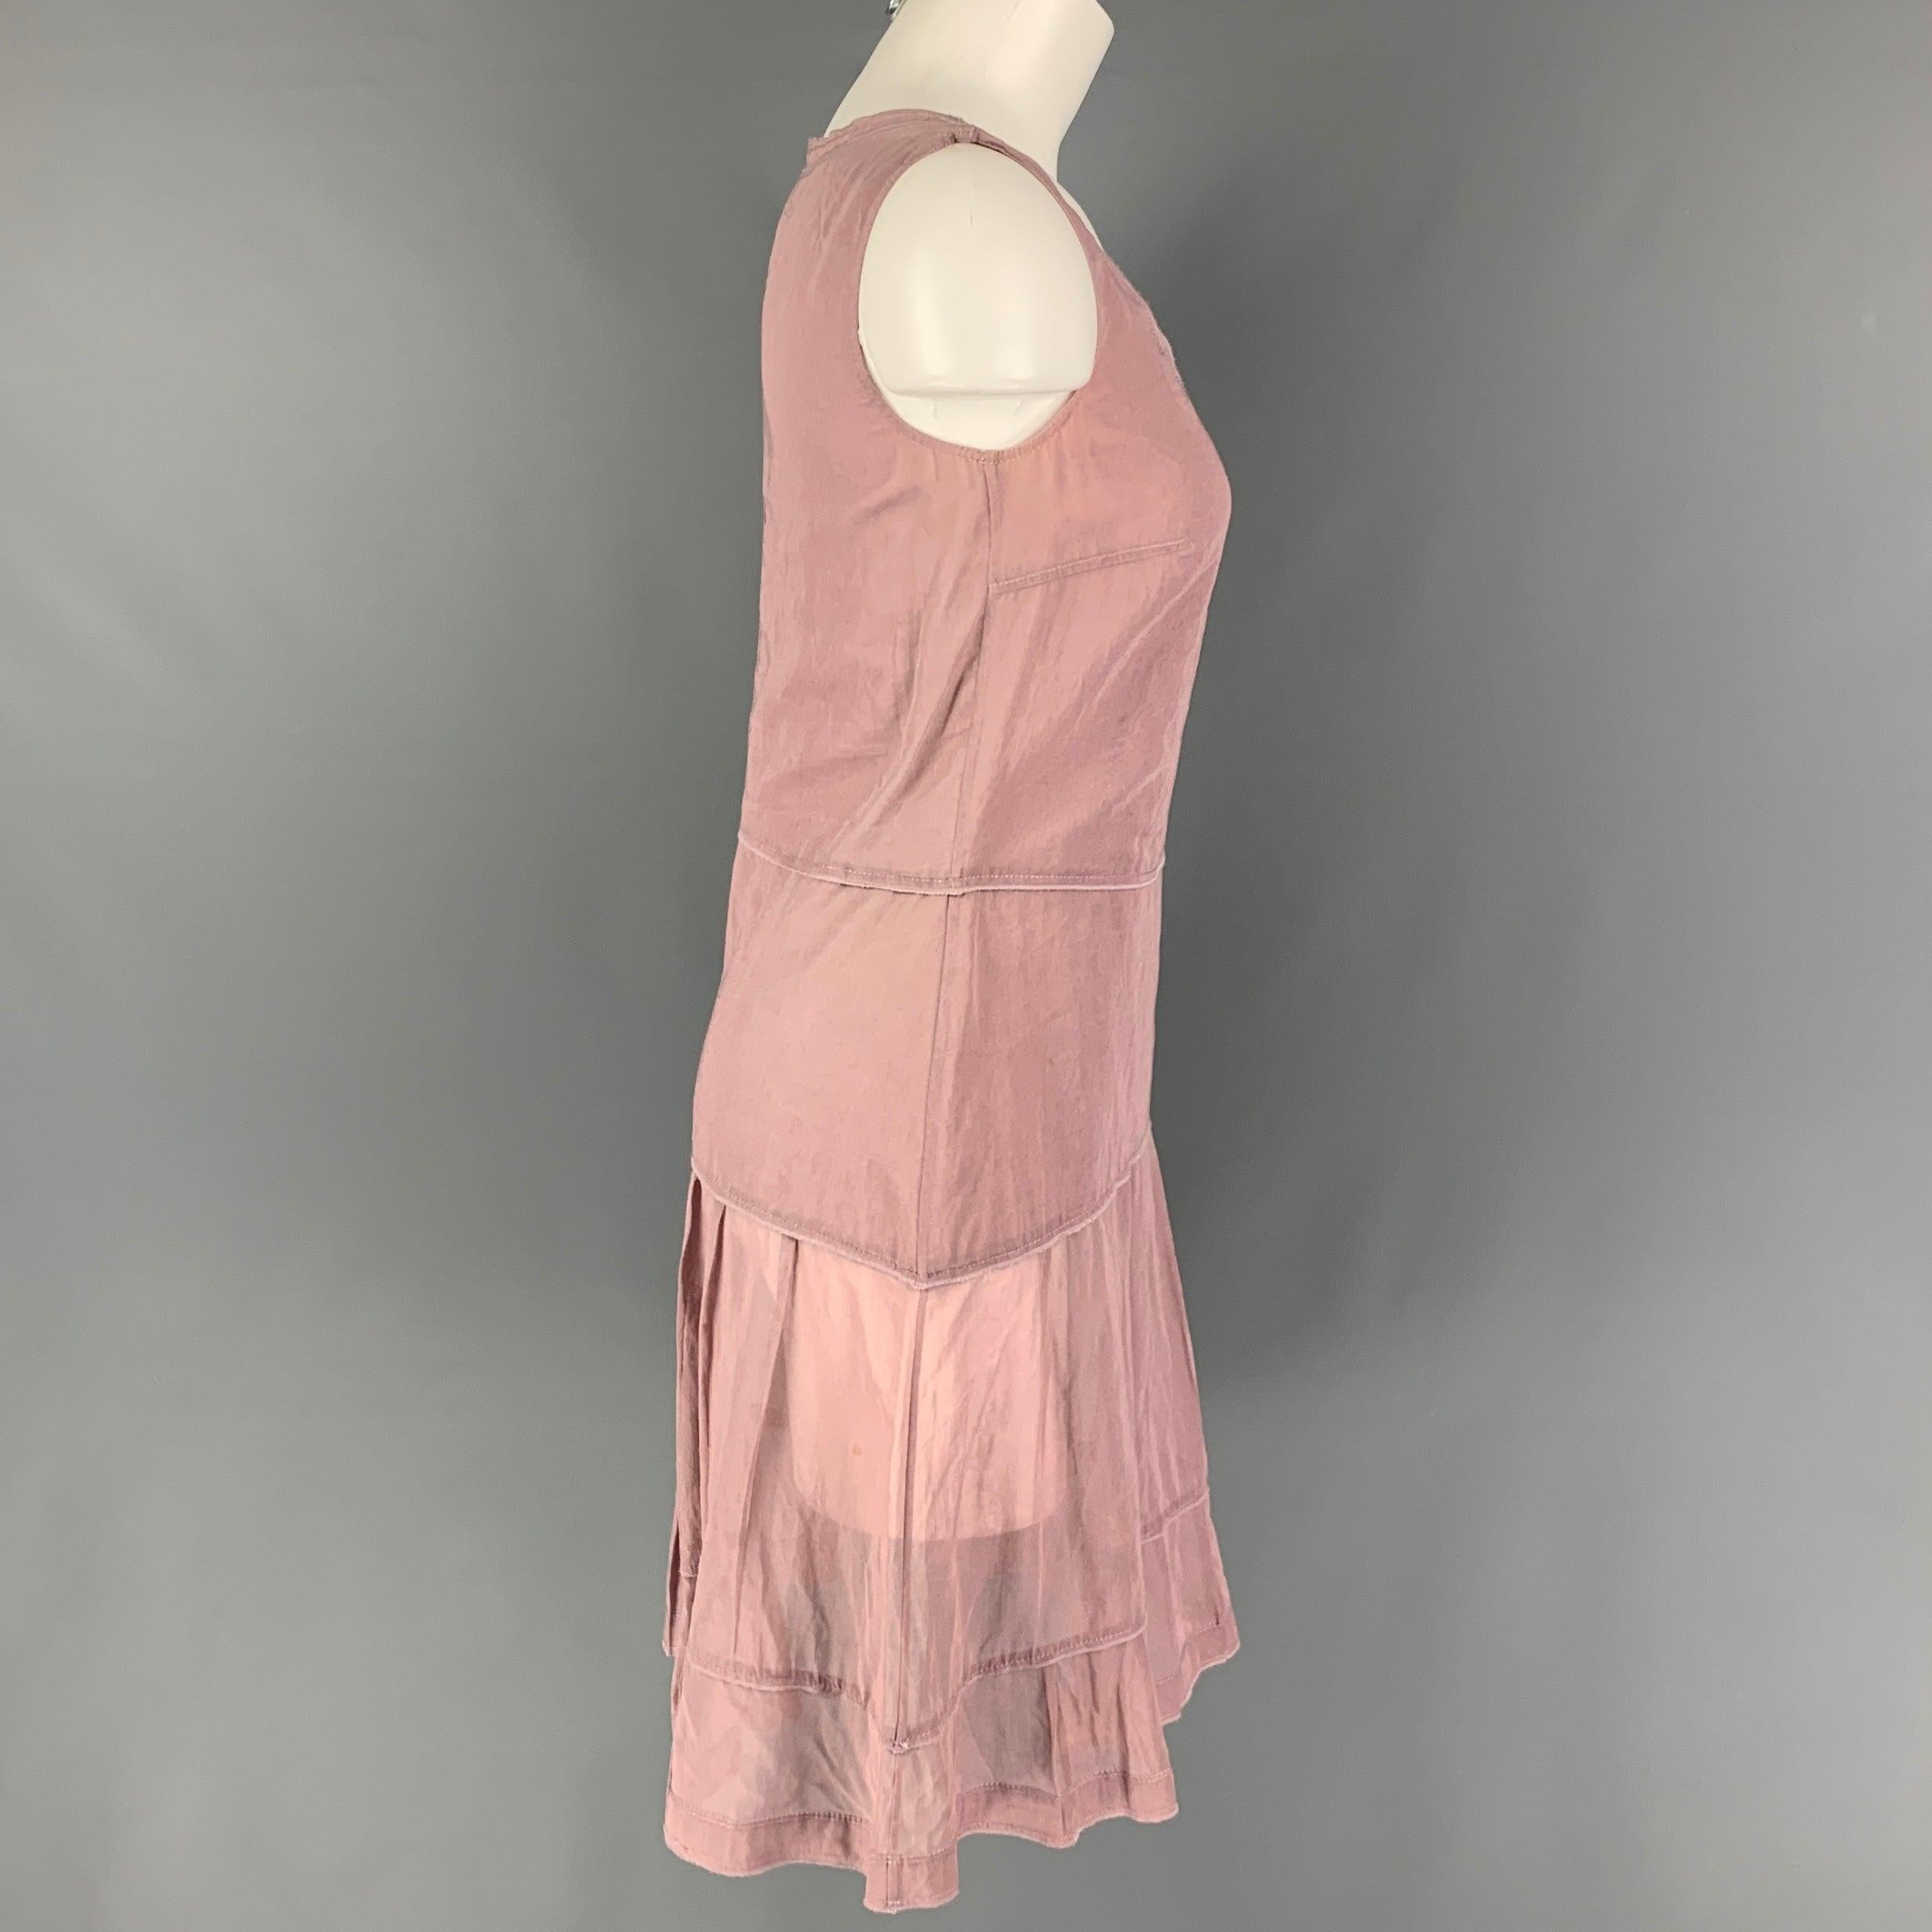 Das Kleid von JIL SANDER ist aus staubrosa Baumwolle und hat einen plissierten Stil, ist doppellagig, ärmellos und hat einen seitlichen Reißverschluss. Hergestellt in Italien.
Gut
Gebrauchtes Zustand. Kleiner Fleck auf der Vorderseite. Wie es ist. 